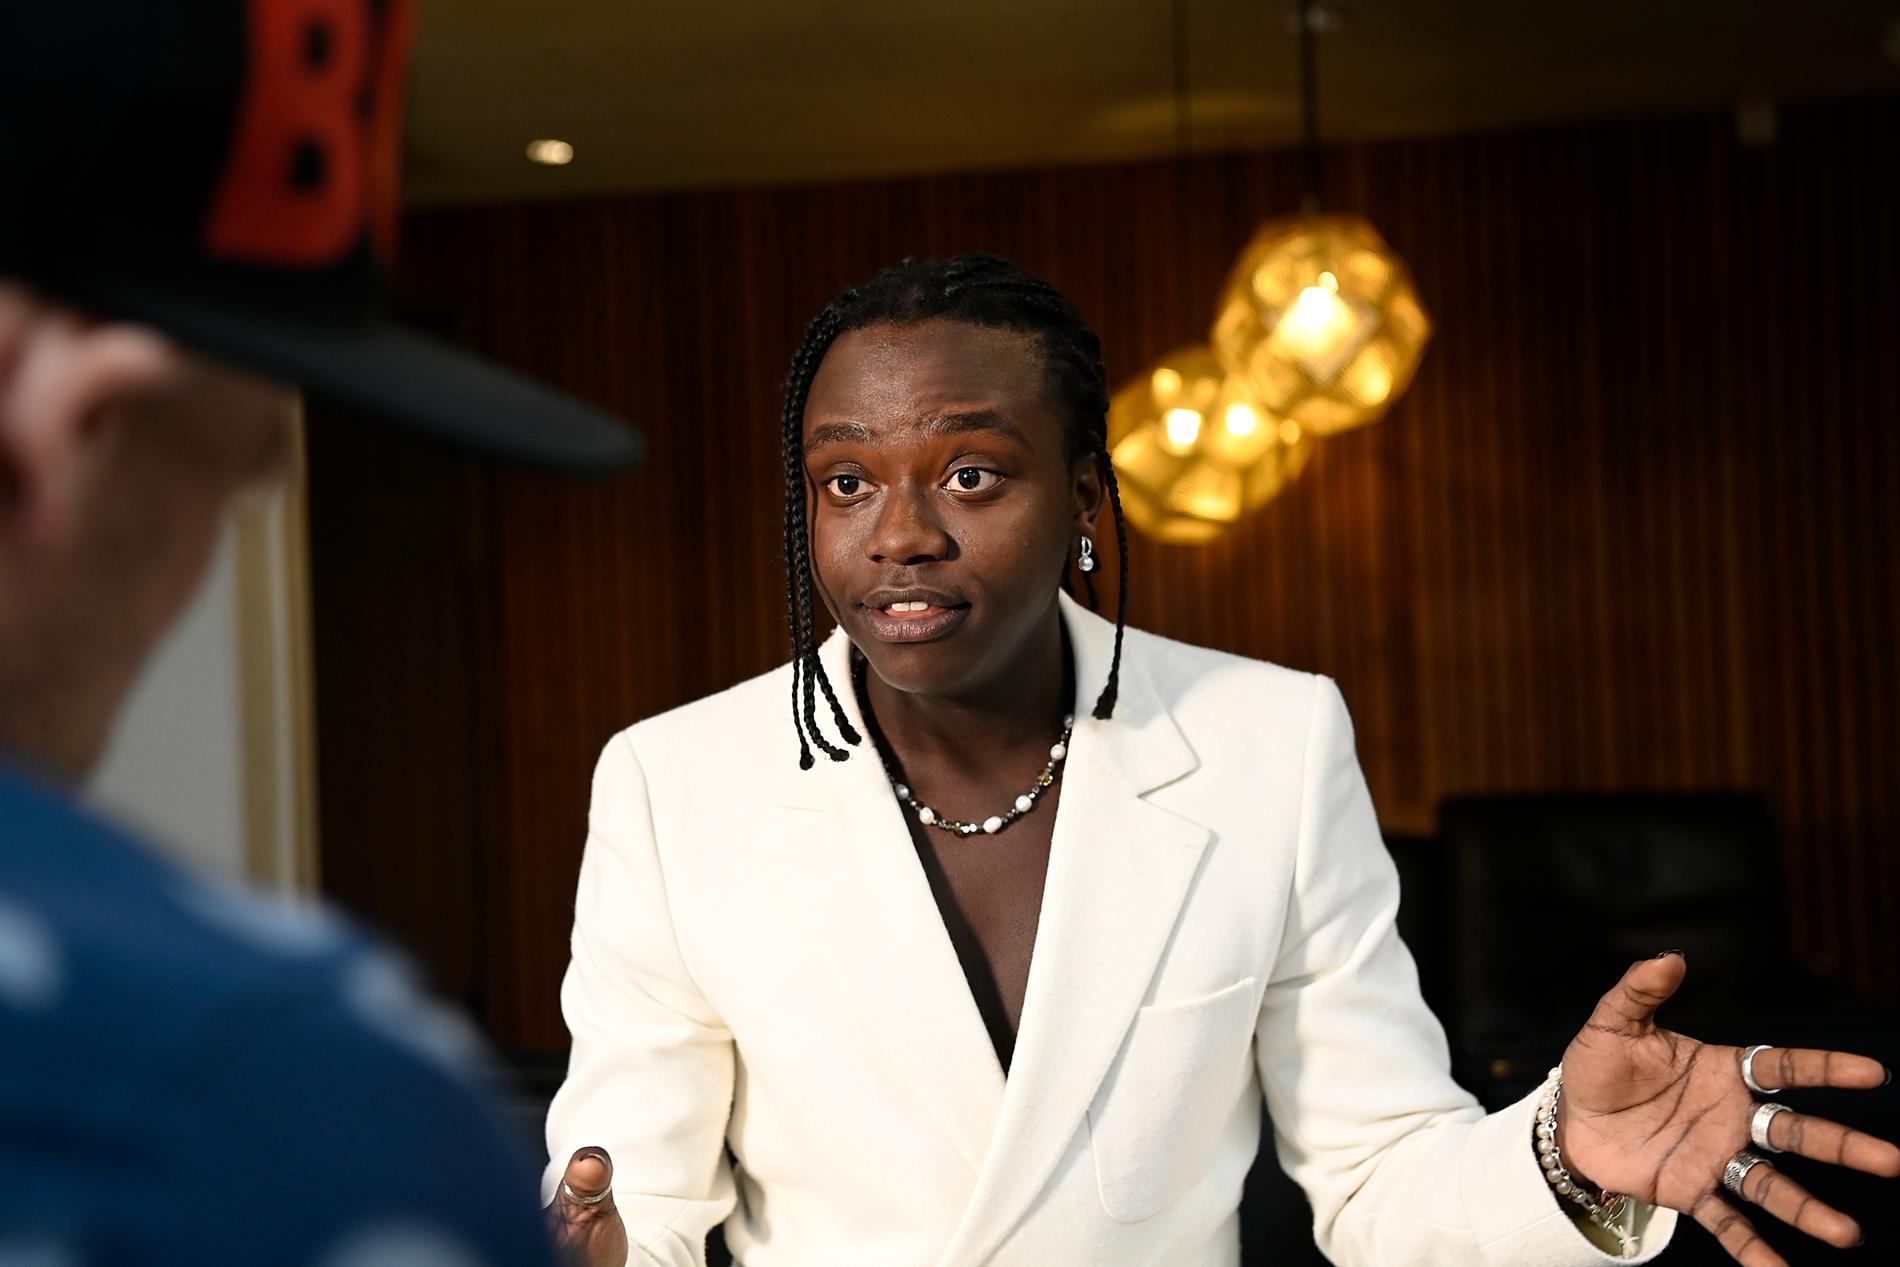 Tusse Chiza intervjuas av Aftonbladets Tobbe Ek vid ett tidigare tillfälle